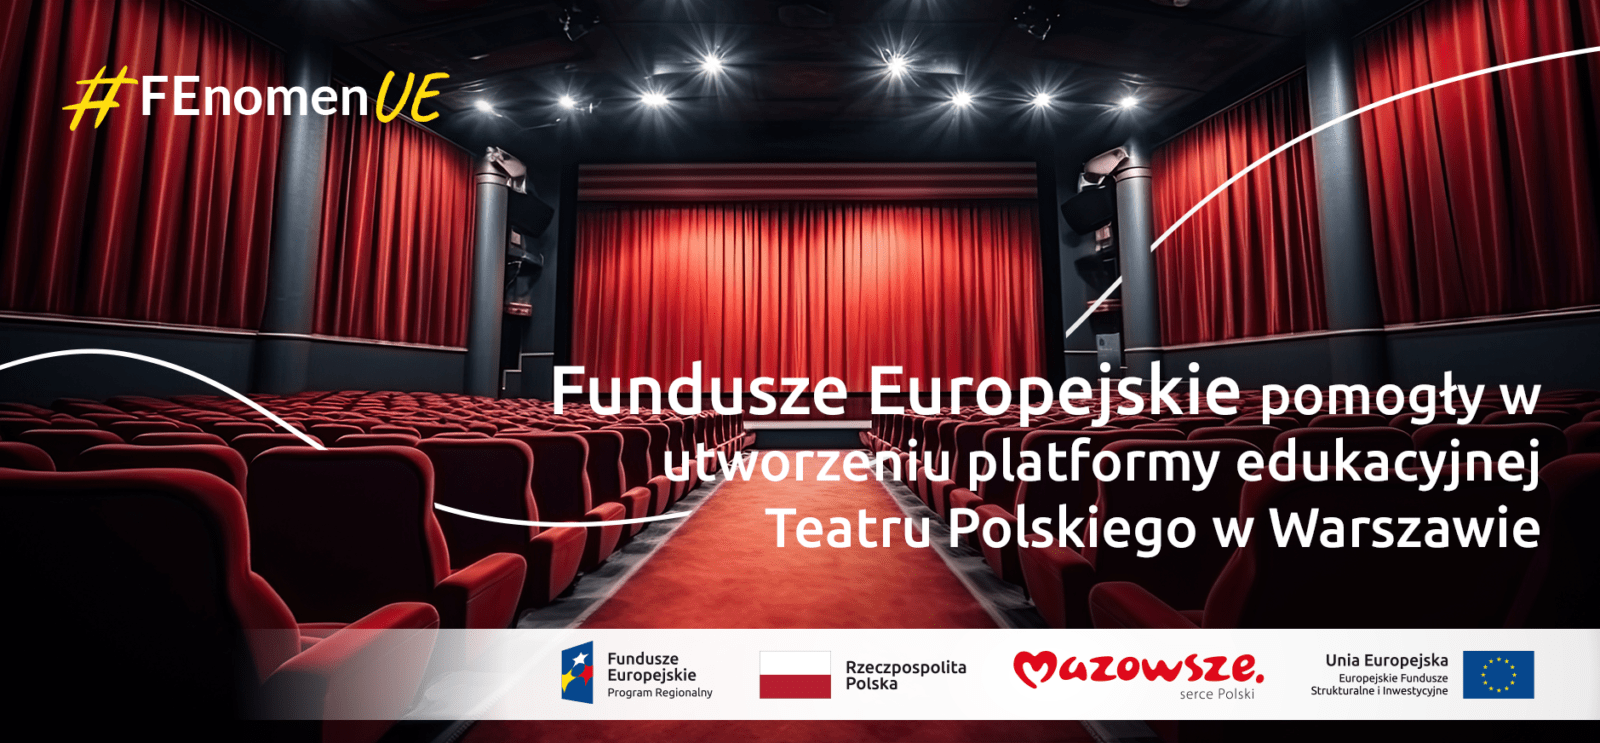 Hasło "Fundusze Europejskie pomogły w utworzeniu platformy edukacyjnej Teatru Polskiego w Warszawie #FEnomenUE", a w tle scena teatralna